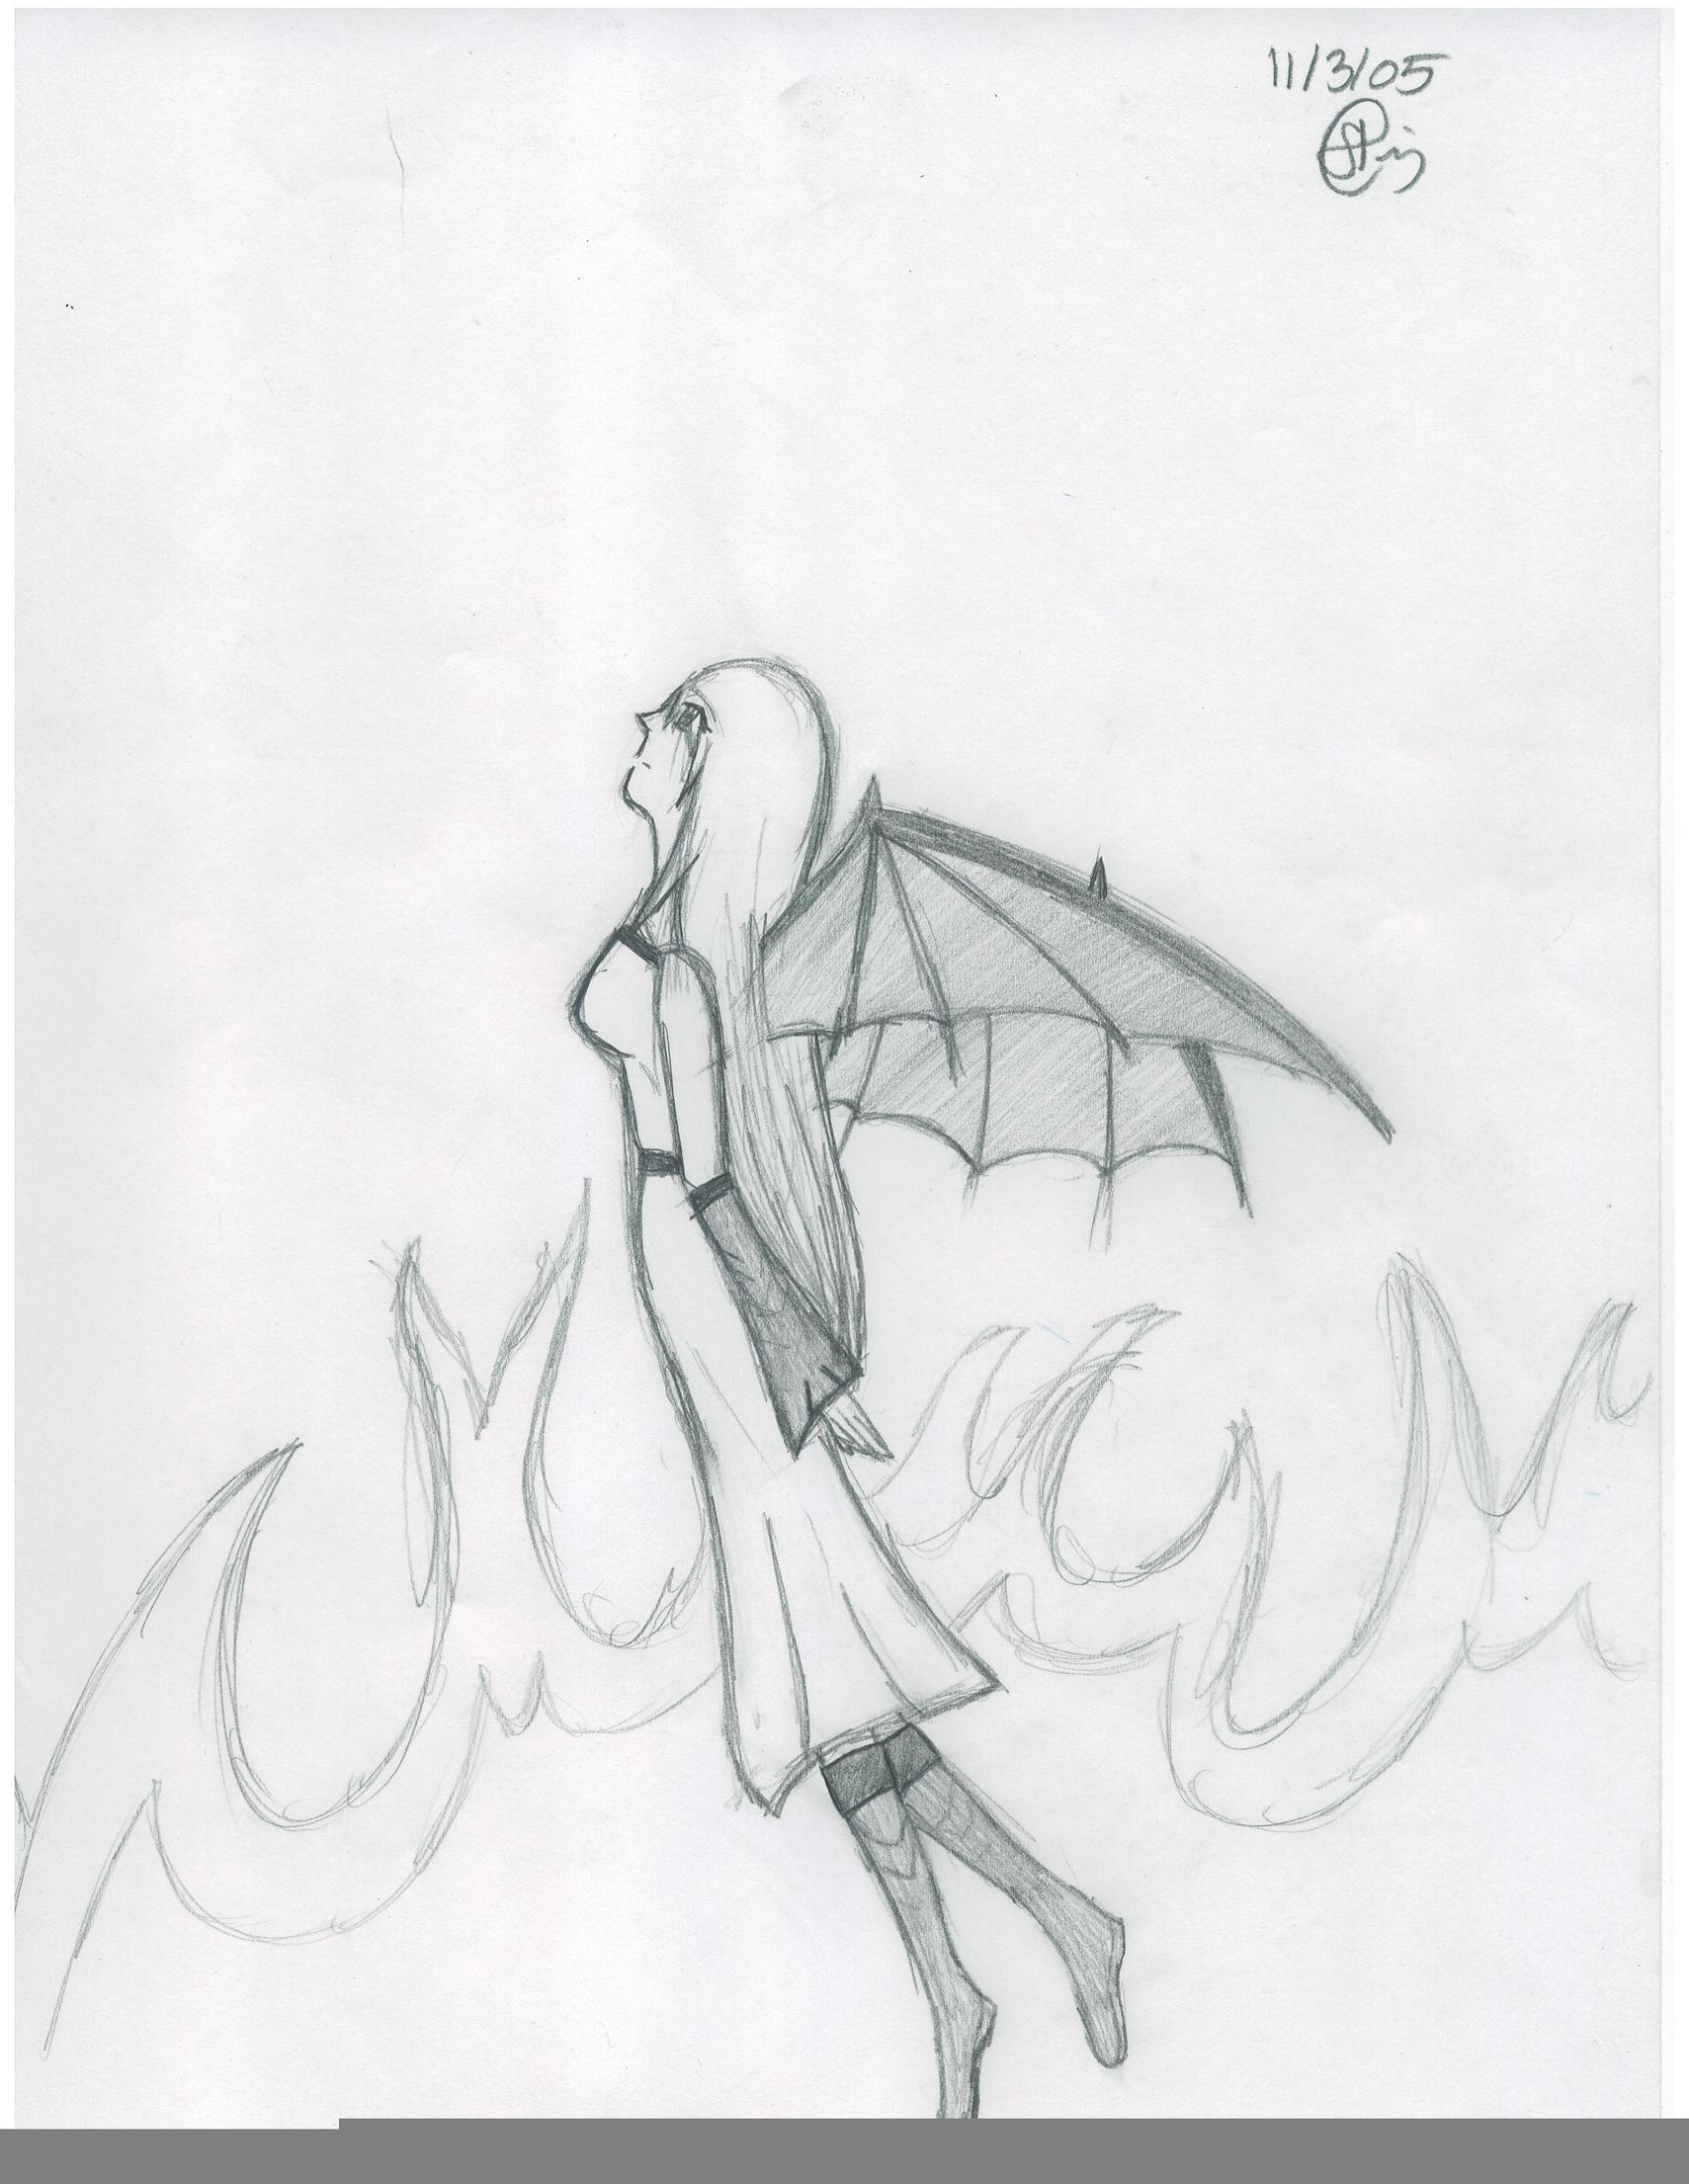 Warrior girl w/ bat wings (again) by LiL_NeKo_DeMoN